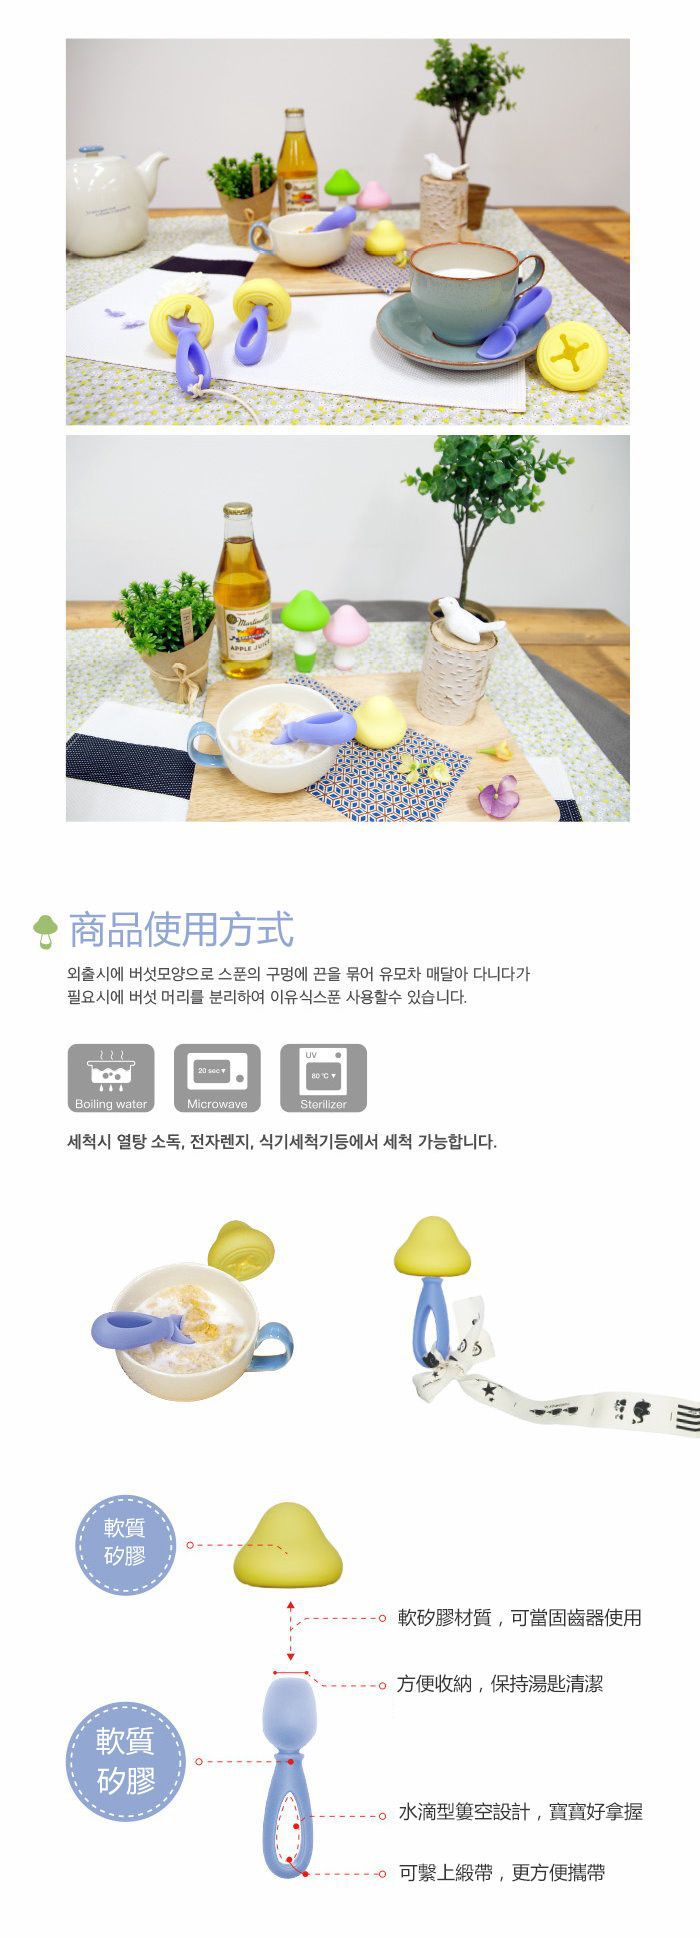 韓國製可可艾莉香菇造型軟質湯匙(可當固齒器使用) 